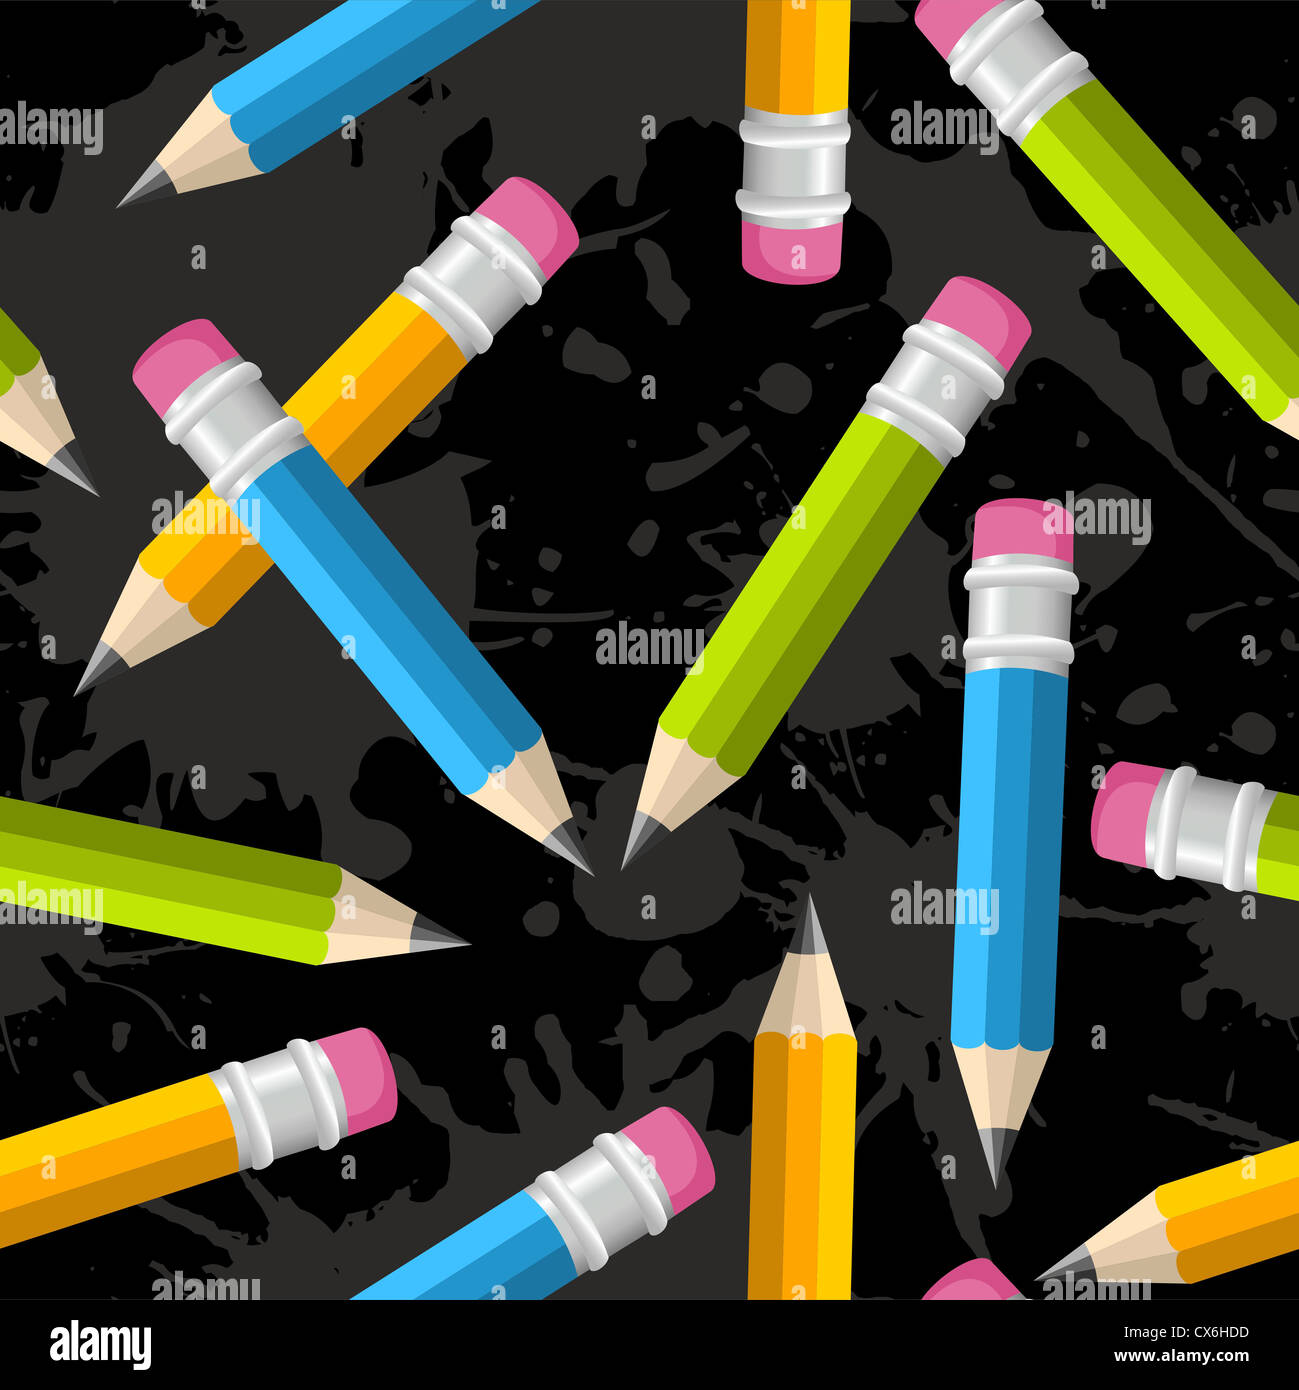 Crayons de couleur motif transparent illustration over grunge background. Couches d'illustration vectorielle pour une manipulation facile et coloris. Banque D'Images